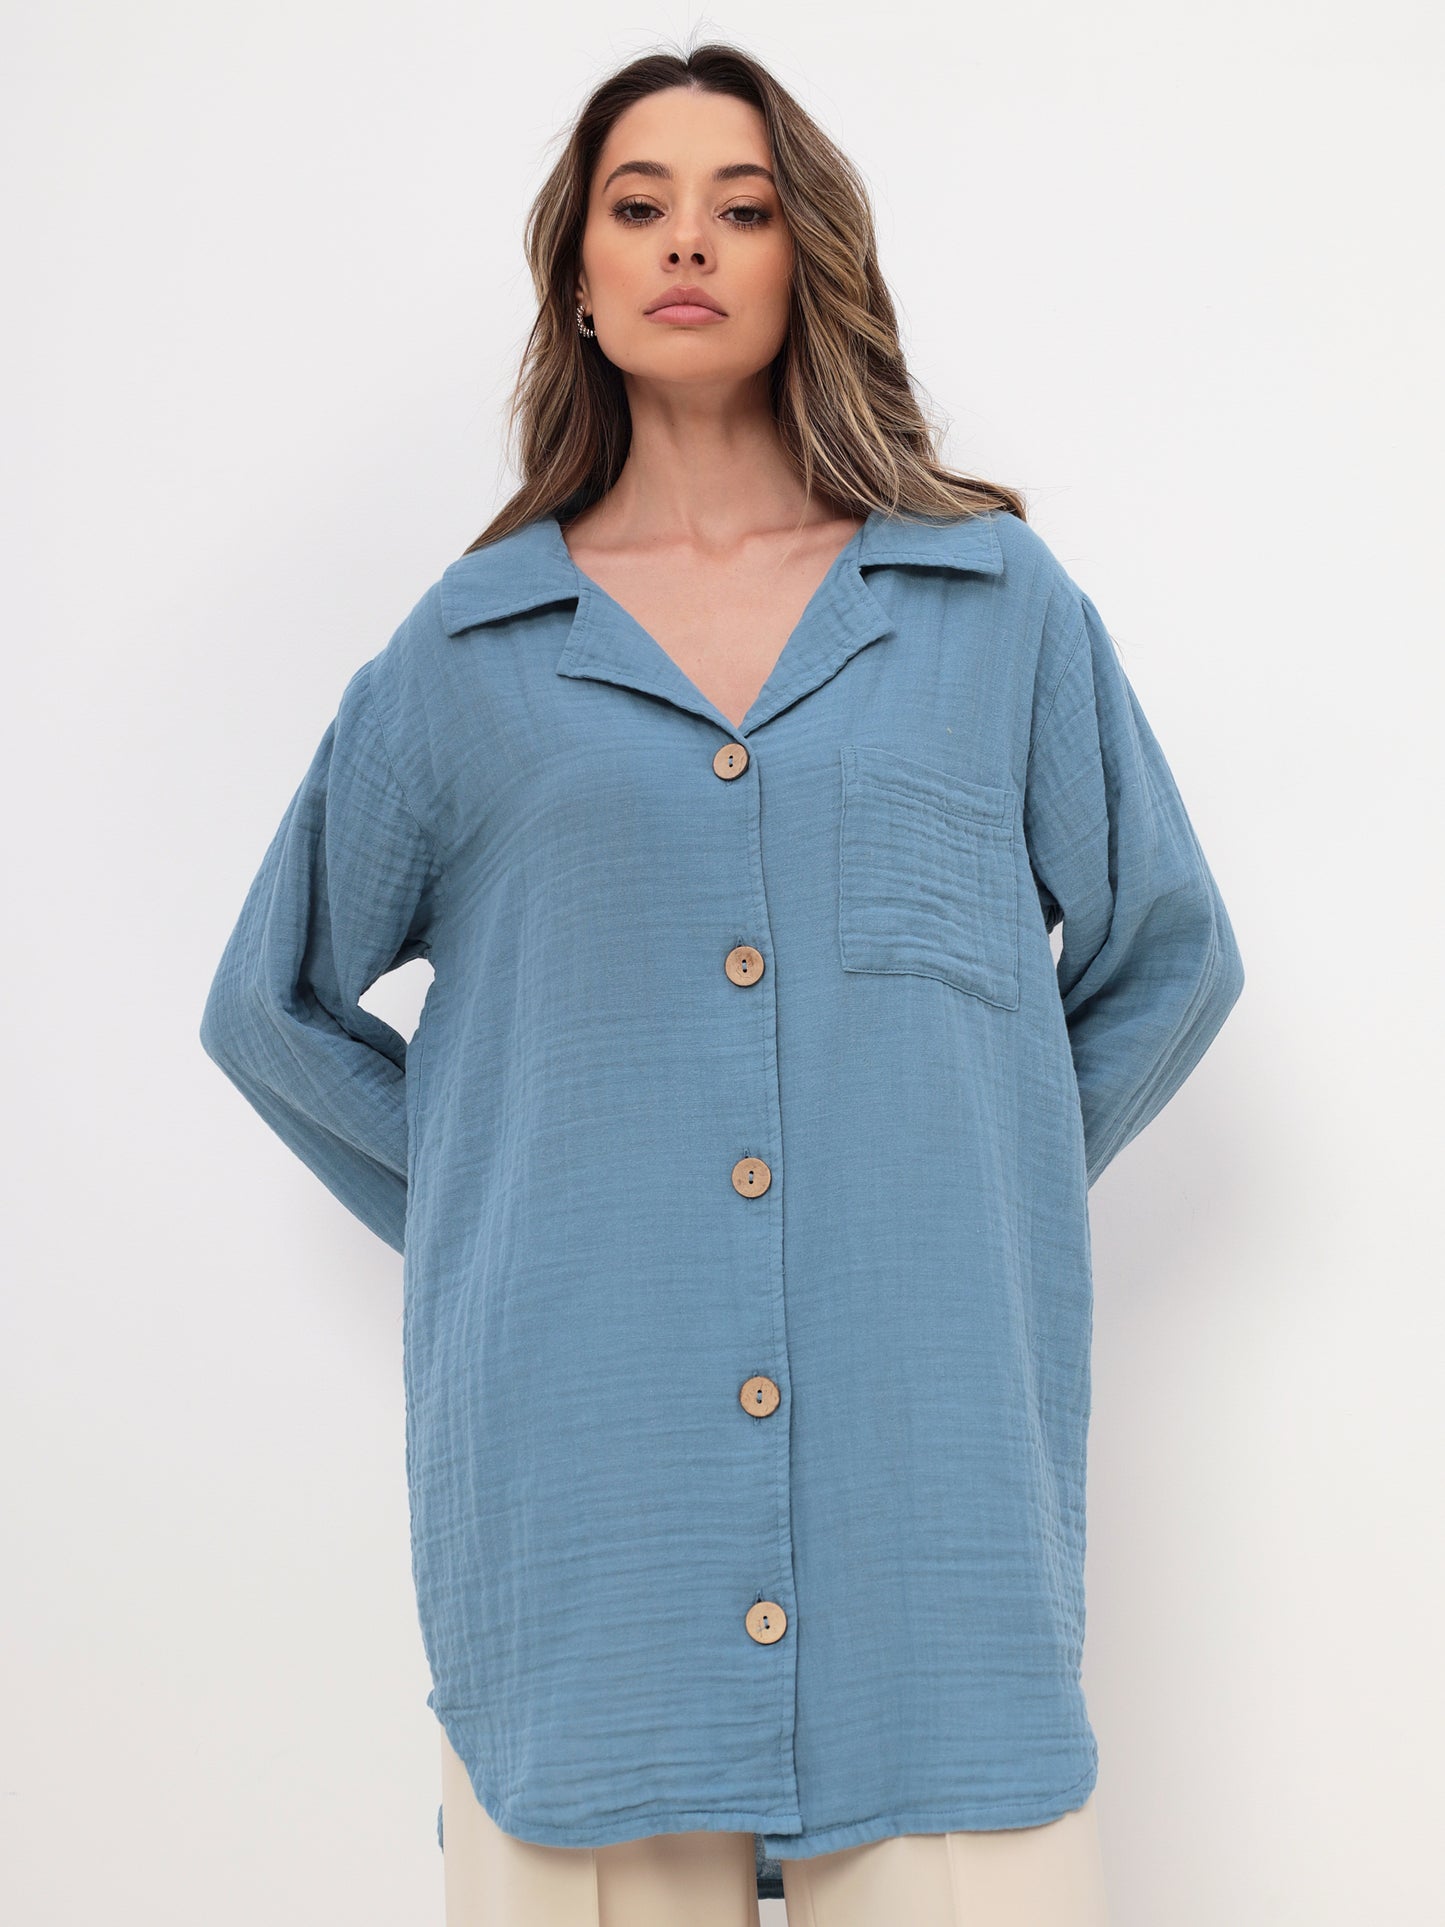 Damen Sommer Mode Hemd aus lässige Musselin Freizeit LMS-6489 Blau